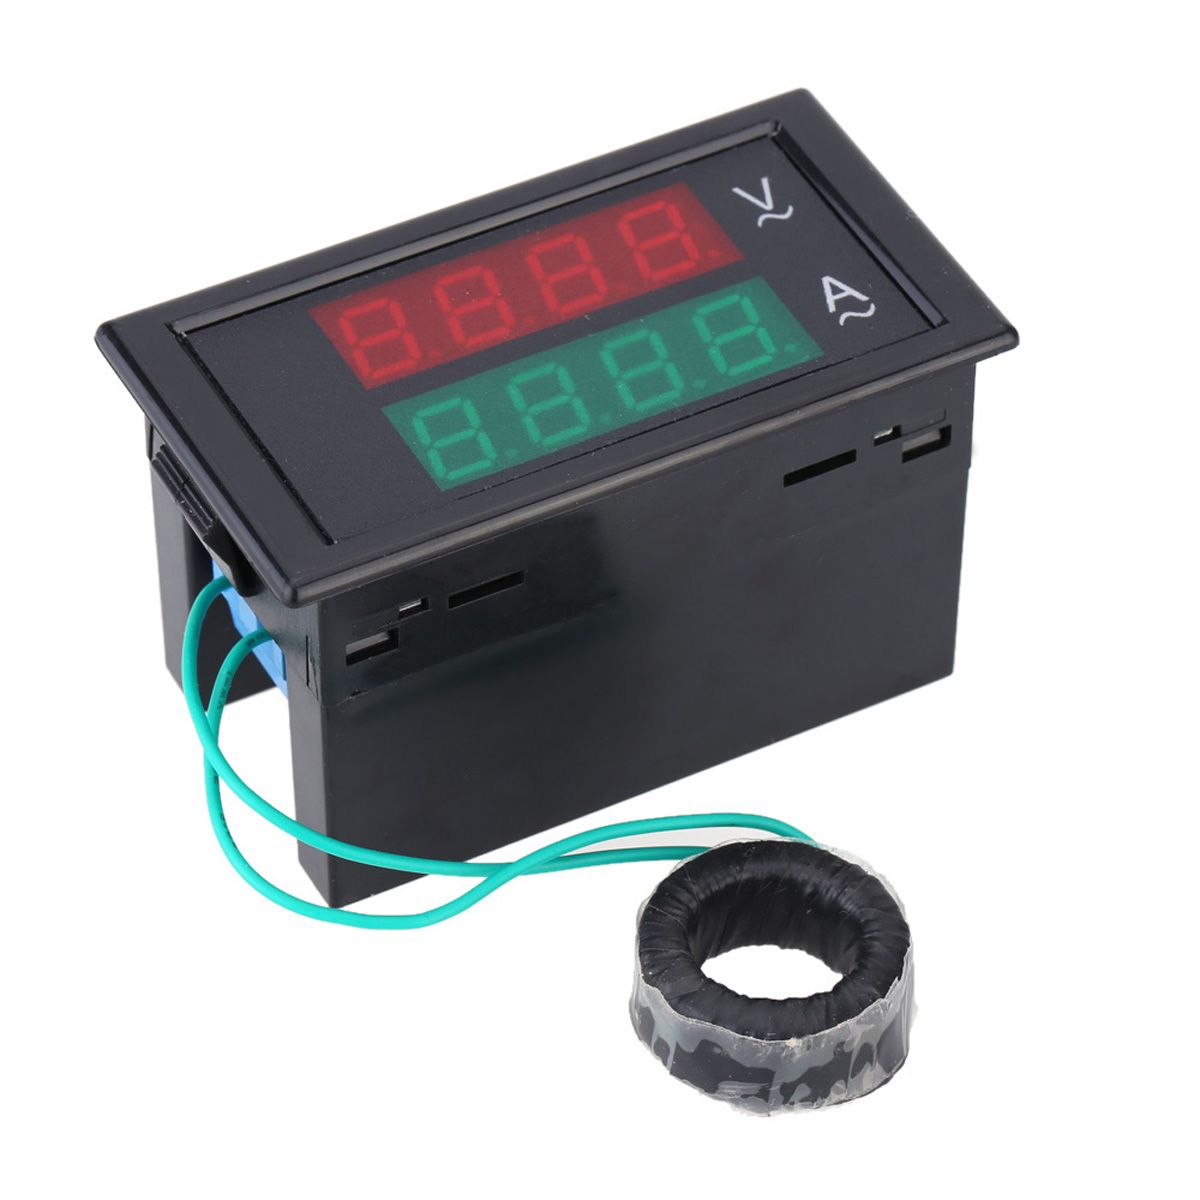 DL69-2042-Dual-AC-Digital-Ammeter-Voltmeter-LCD-Panel-AmpVolt-Meter-With-Back-Case-1443870